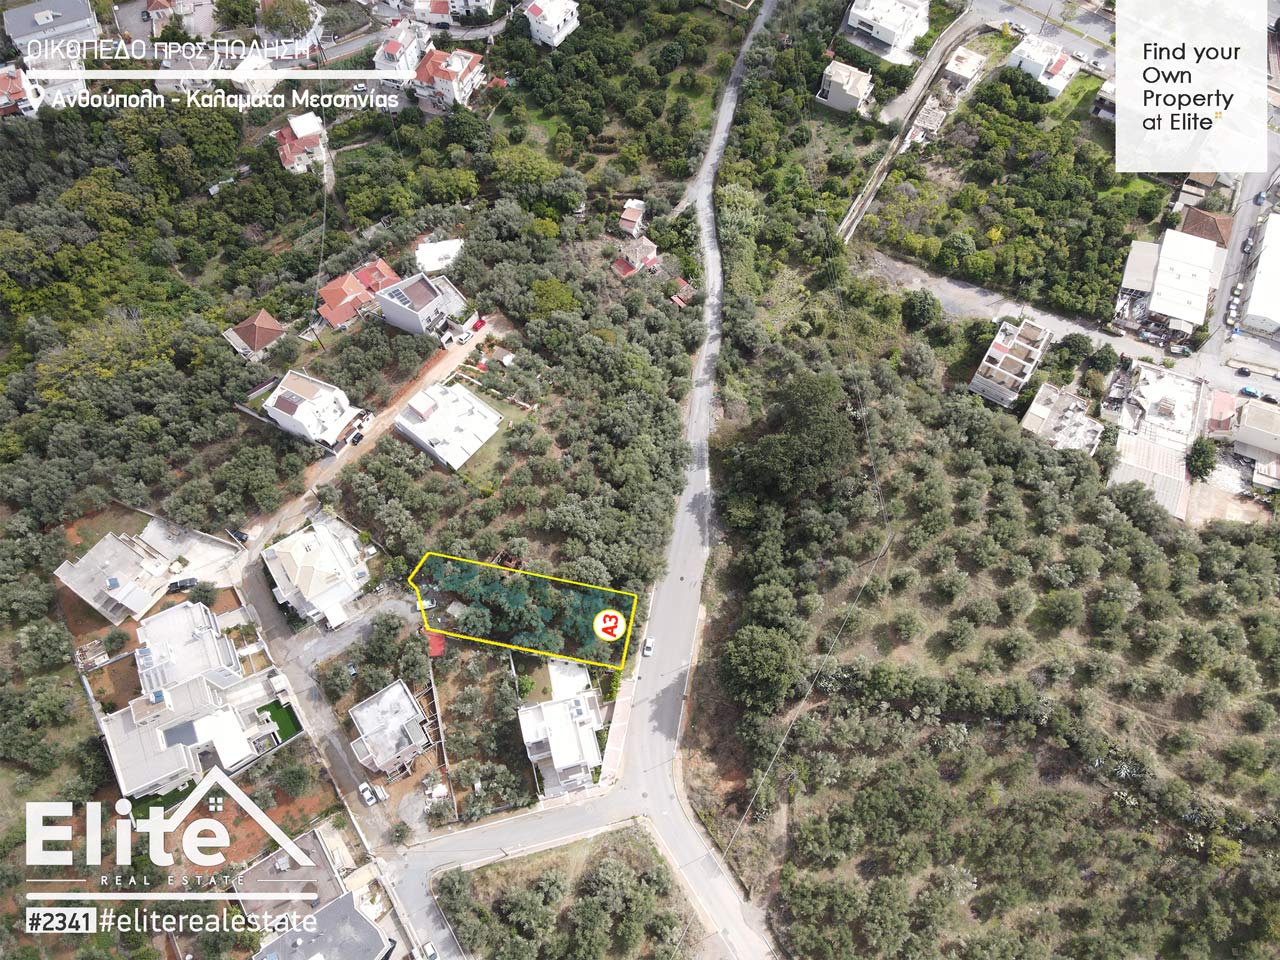 Verkauf von Grundstücken Kalamata (Anthoupoli) #2341 | ELITE REAL ESTATE